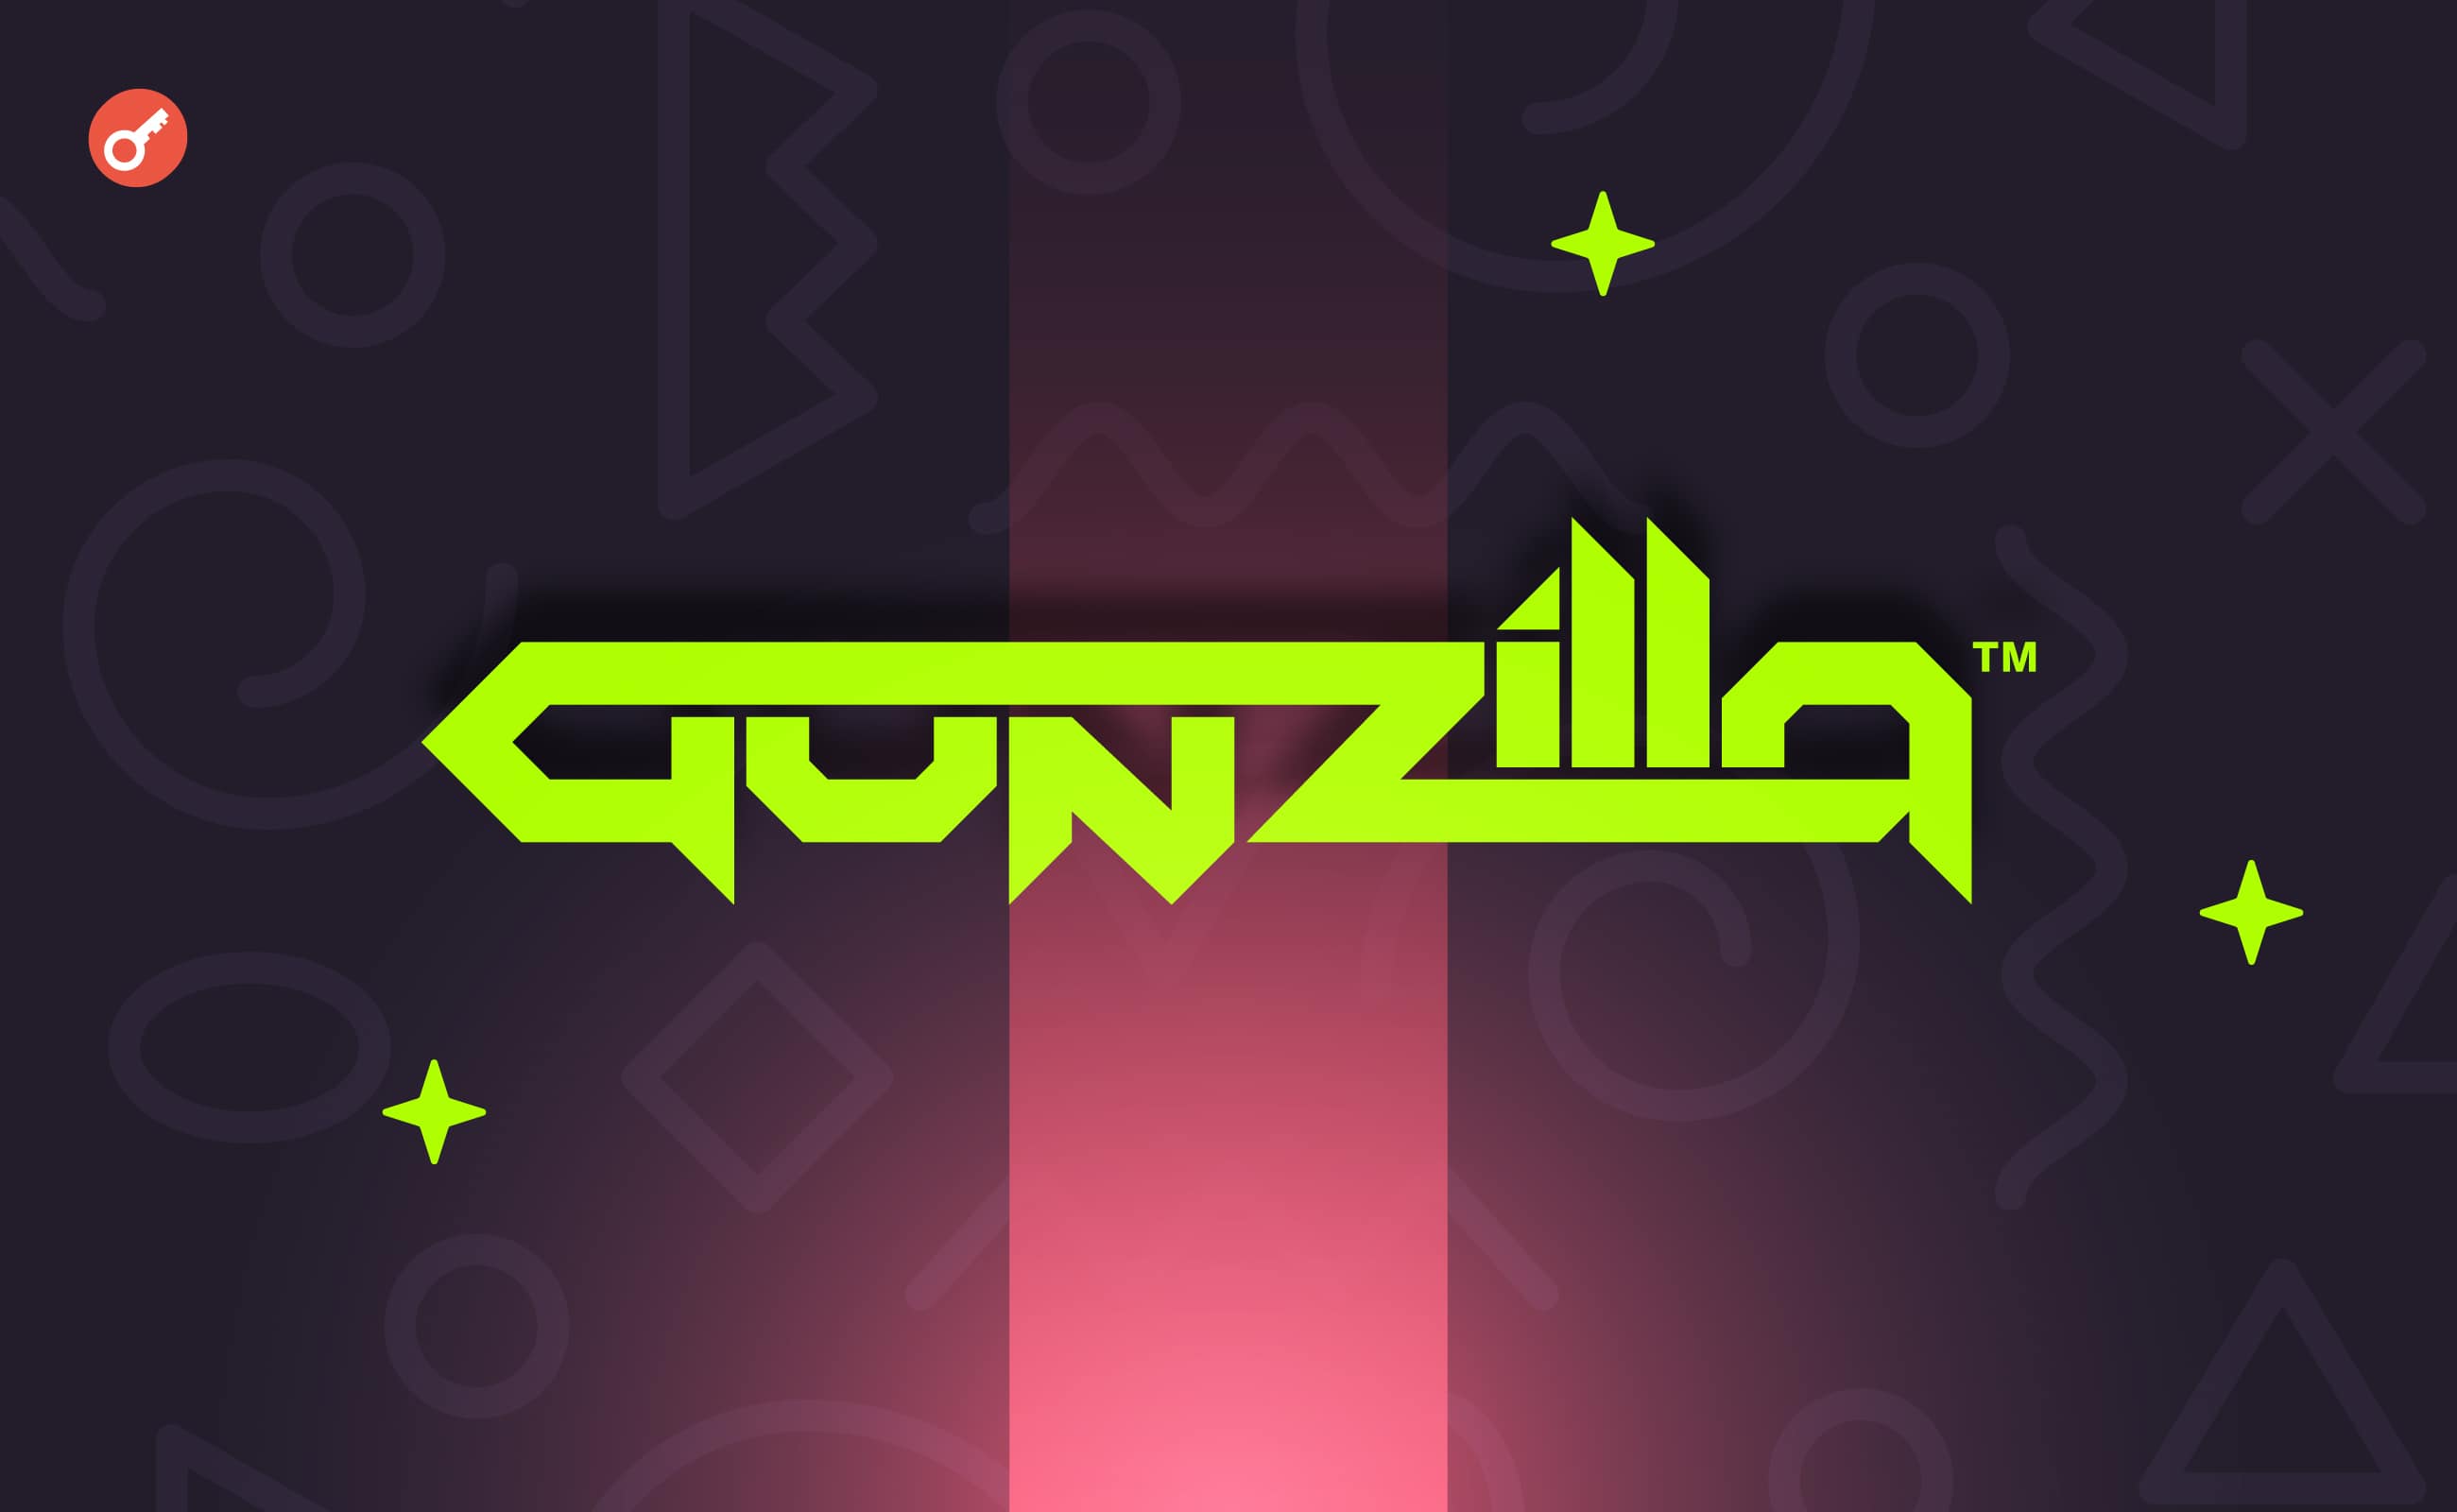 Gunzilla Games оголосила про інтеграцію блокчейну GUNZ в OpenSea. Головний колаж новини.